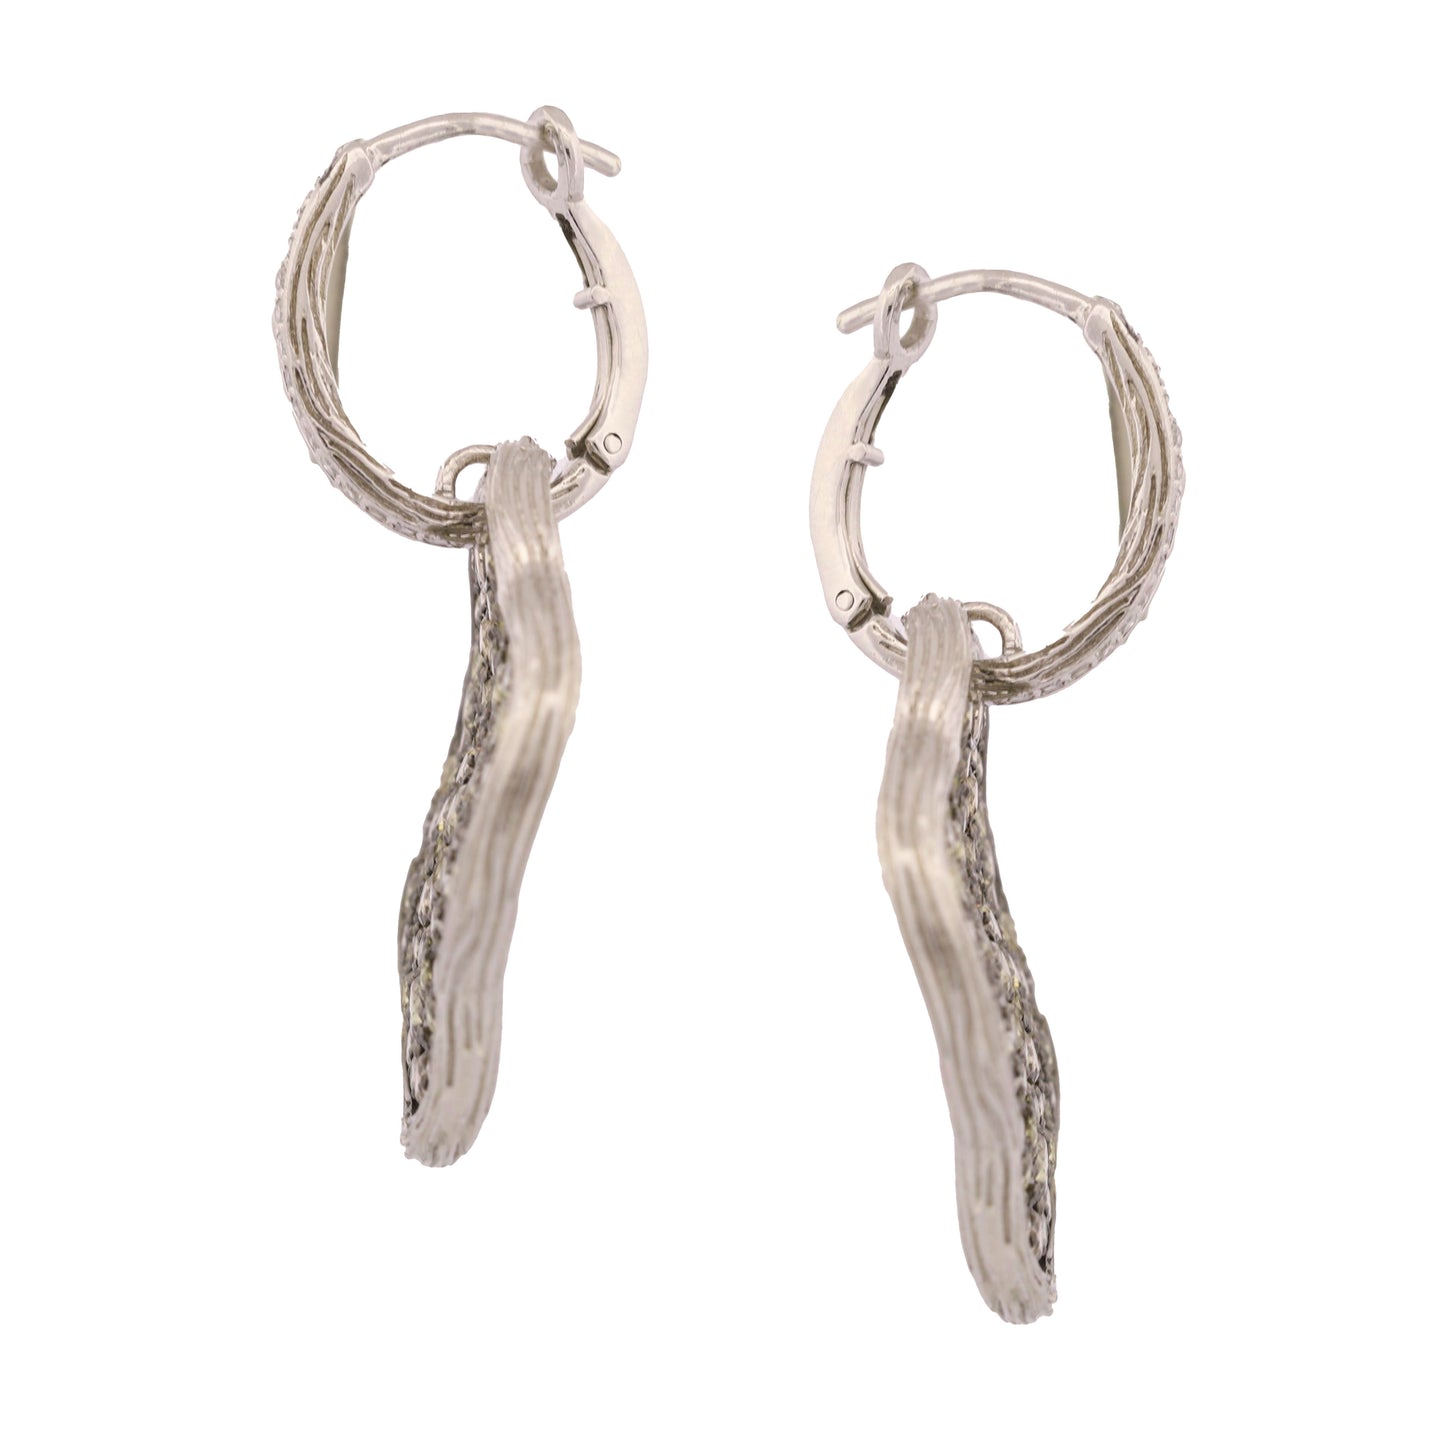 Champagne Diamond Quatrefoil Earrings in 14k White Gold - GJR Signed